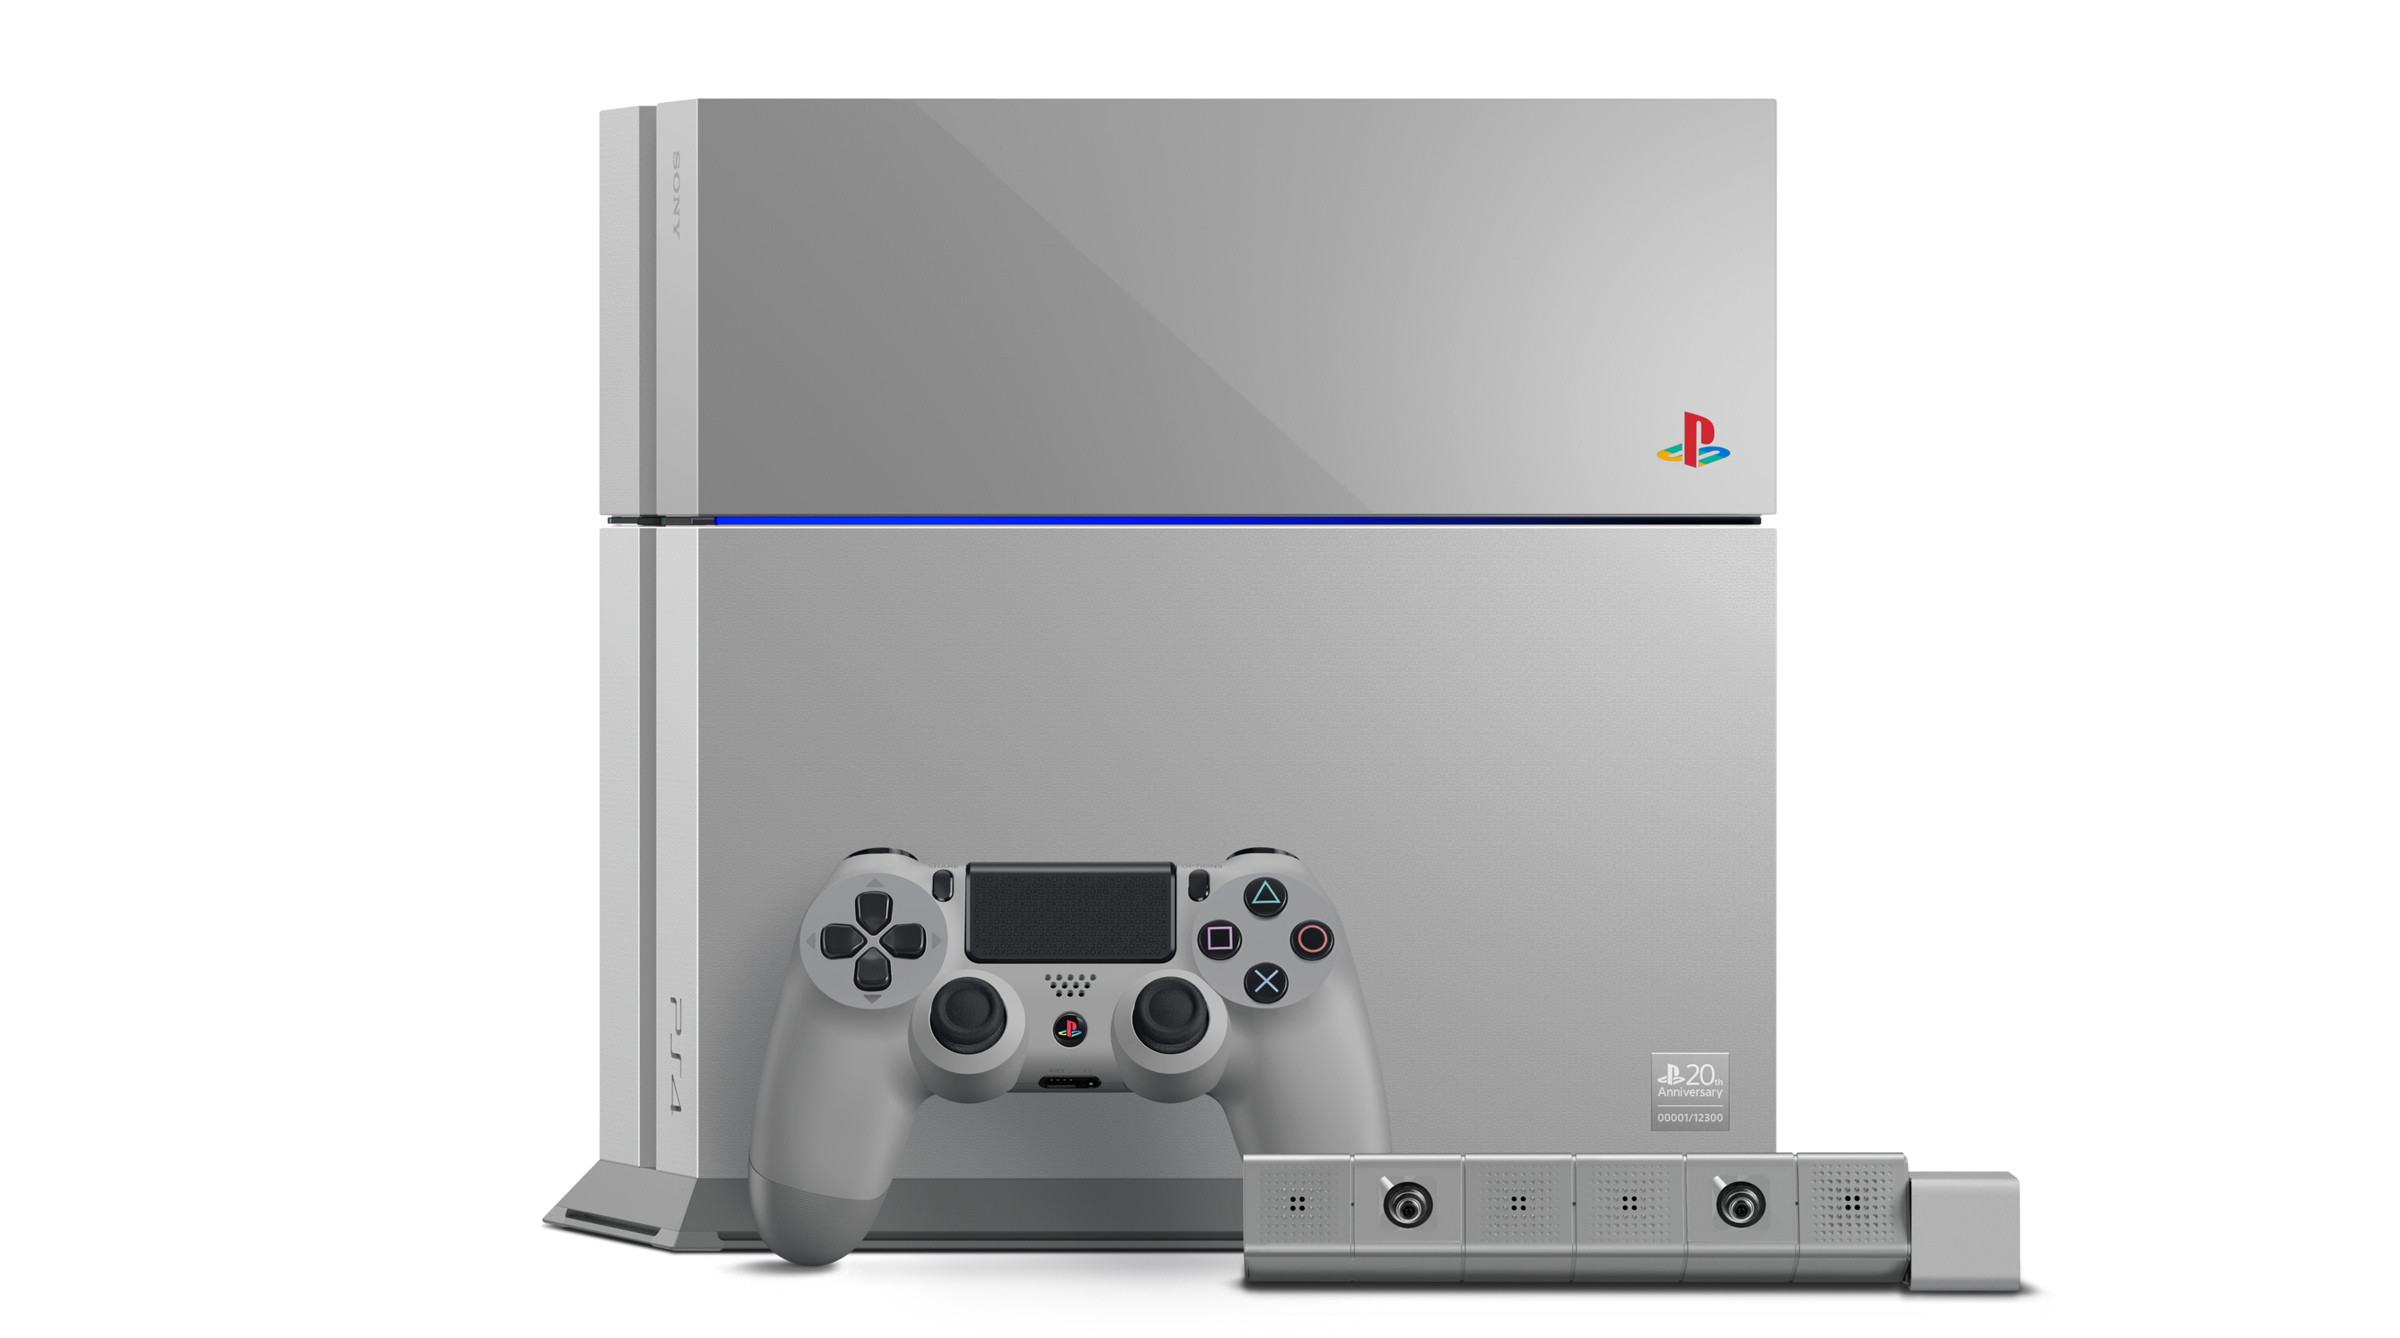 Immagine pubblicata in relazione al seguente contenuto: Sony annuncia la PlayStation 4 20th Anniversary Limited Edition | Nome immagine: news21932_PlayStation-4-20th-Anniversary-Edition_1.jpg